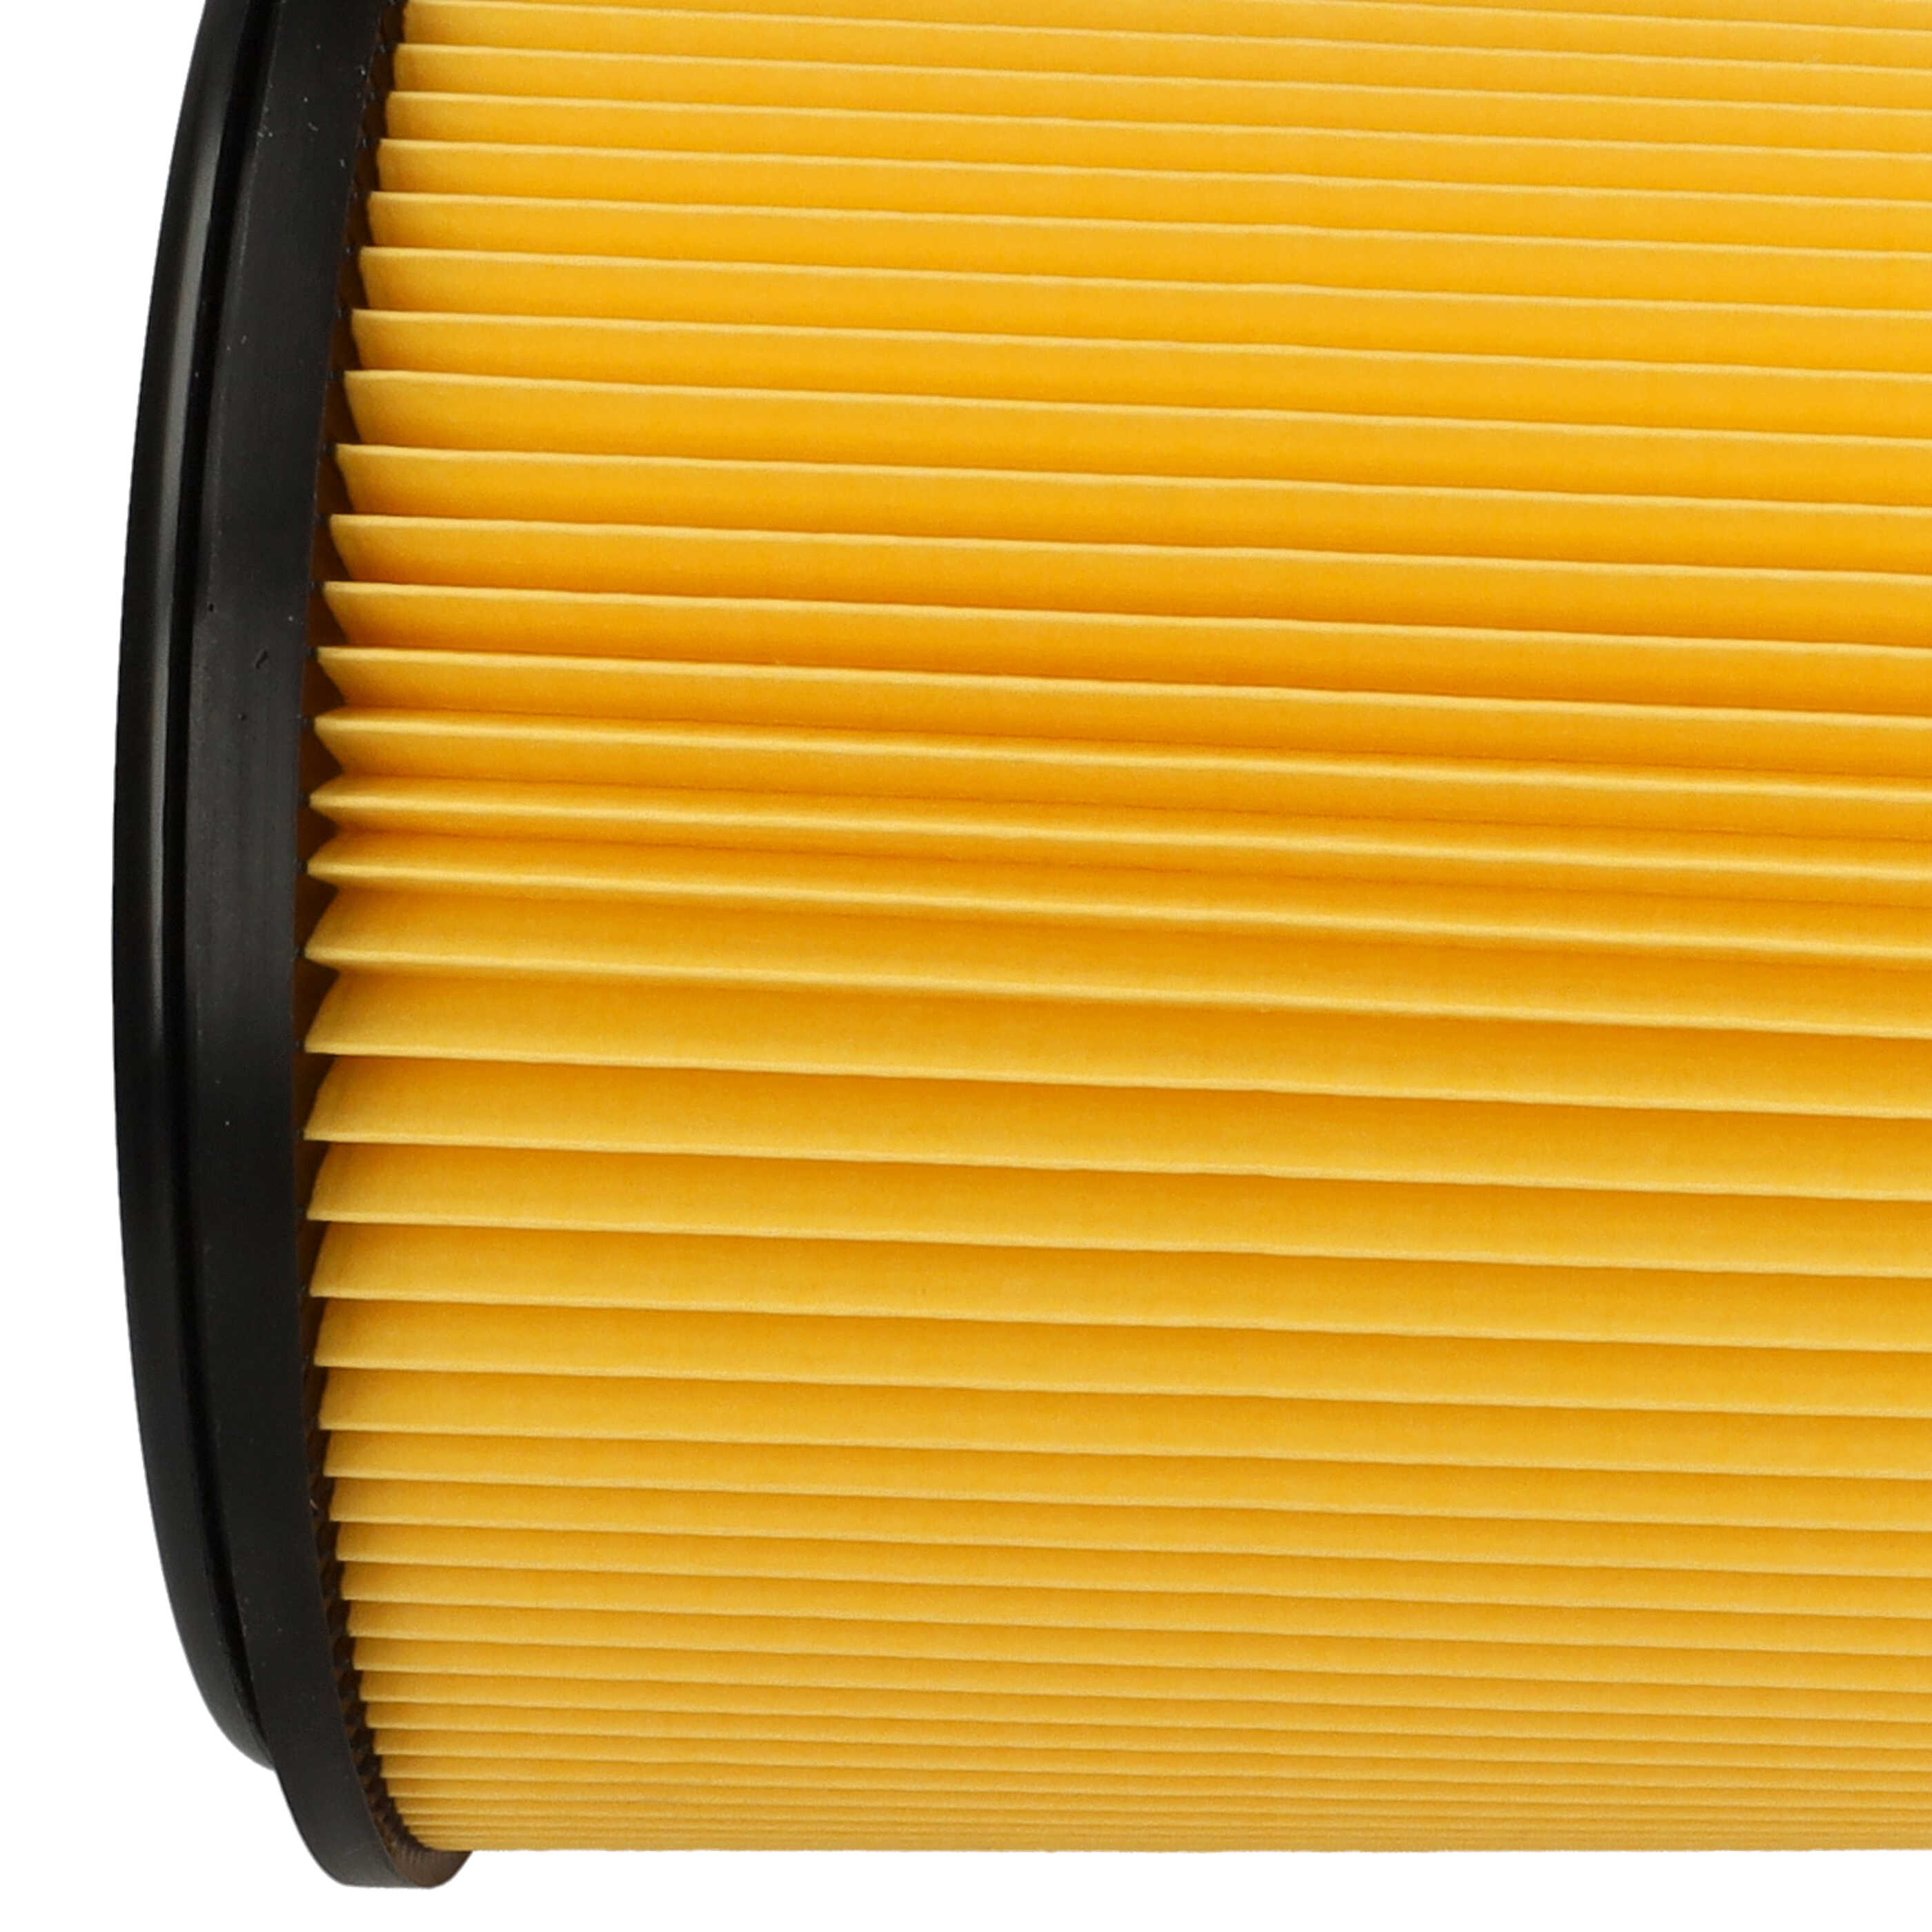 Filtro sostituisce Grizzly 91092030 per aspirapolvere - filtro a pieghe, nero / giallo